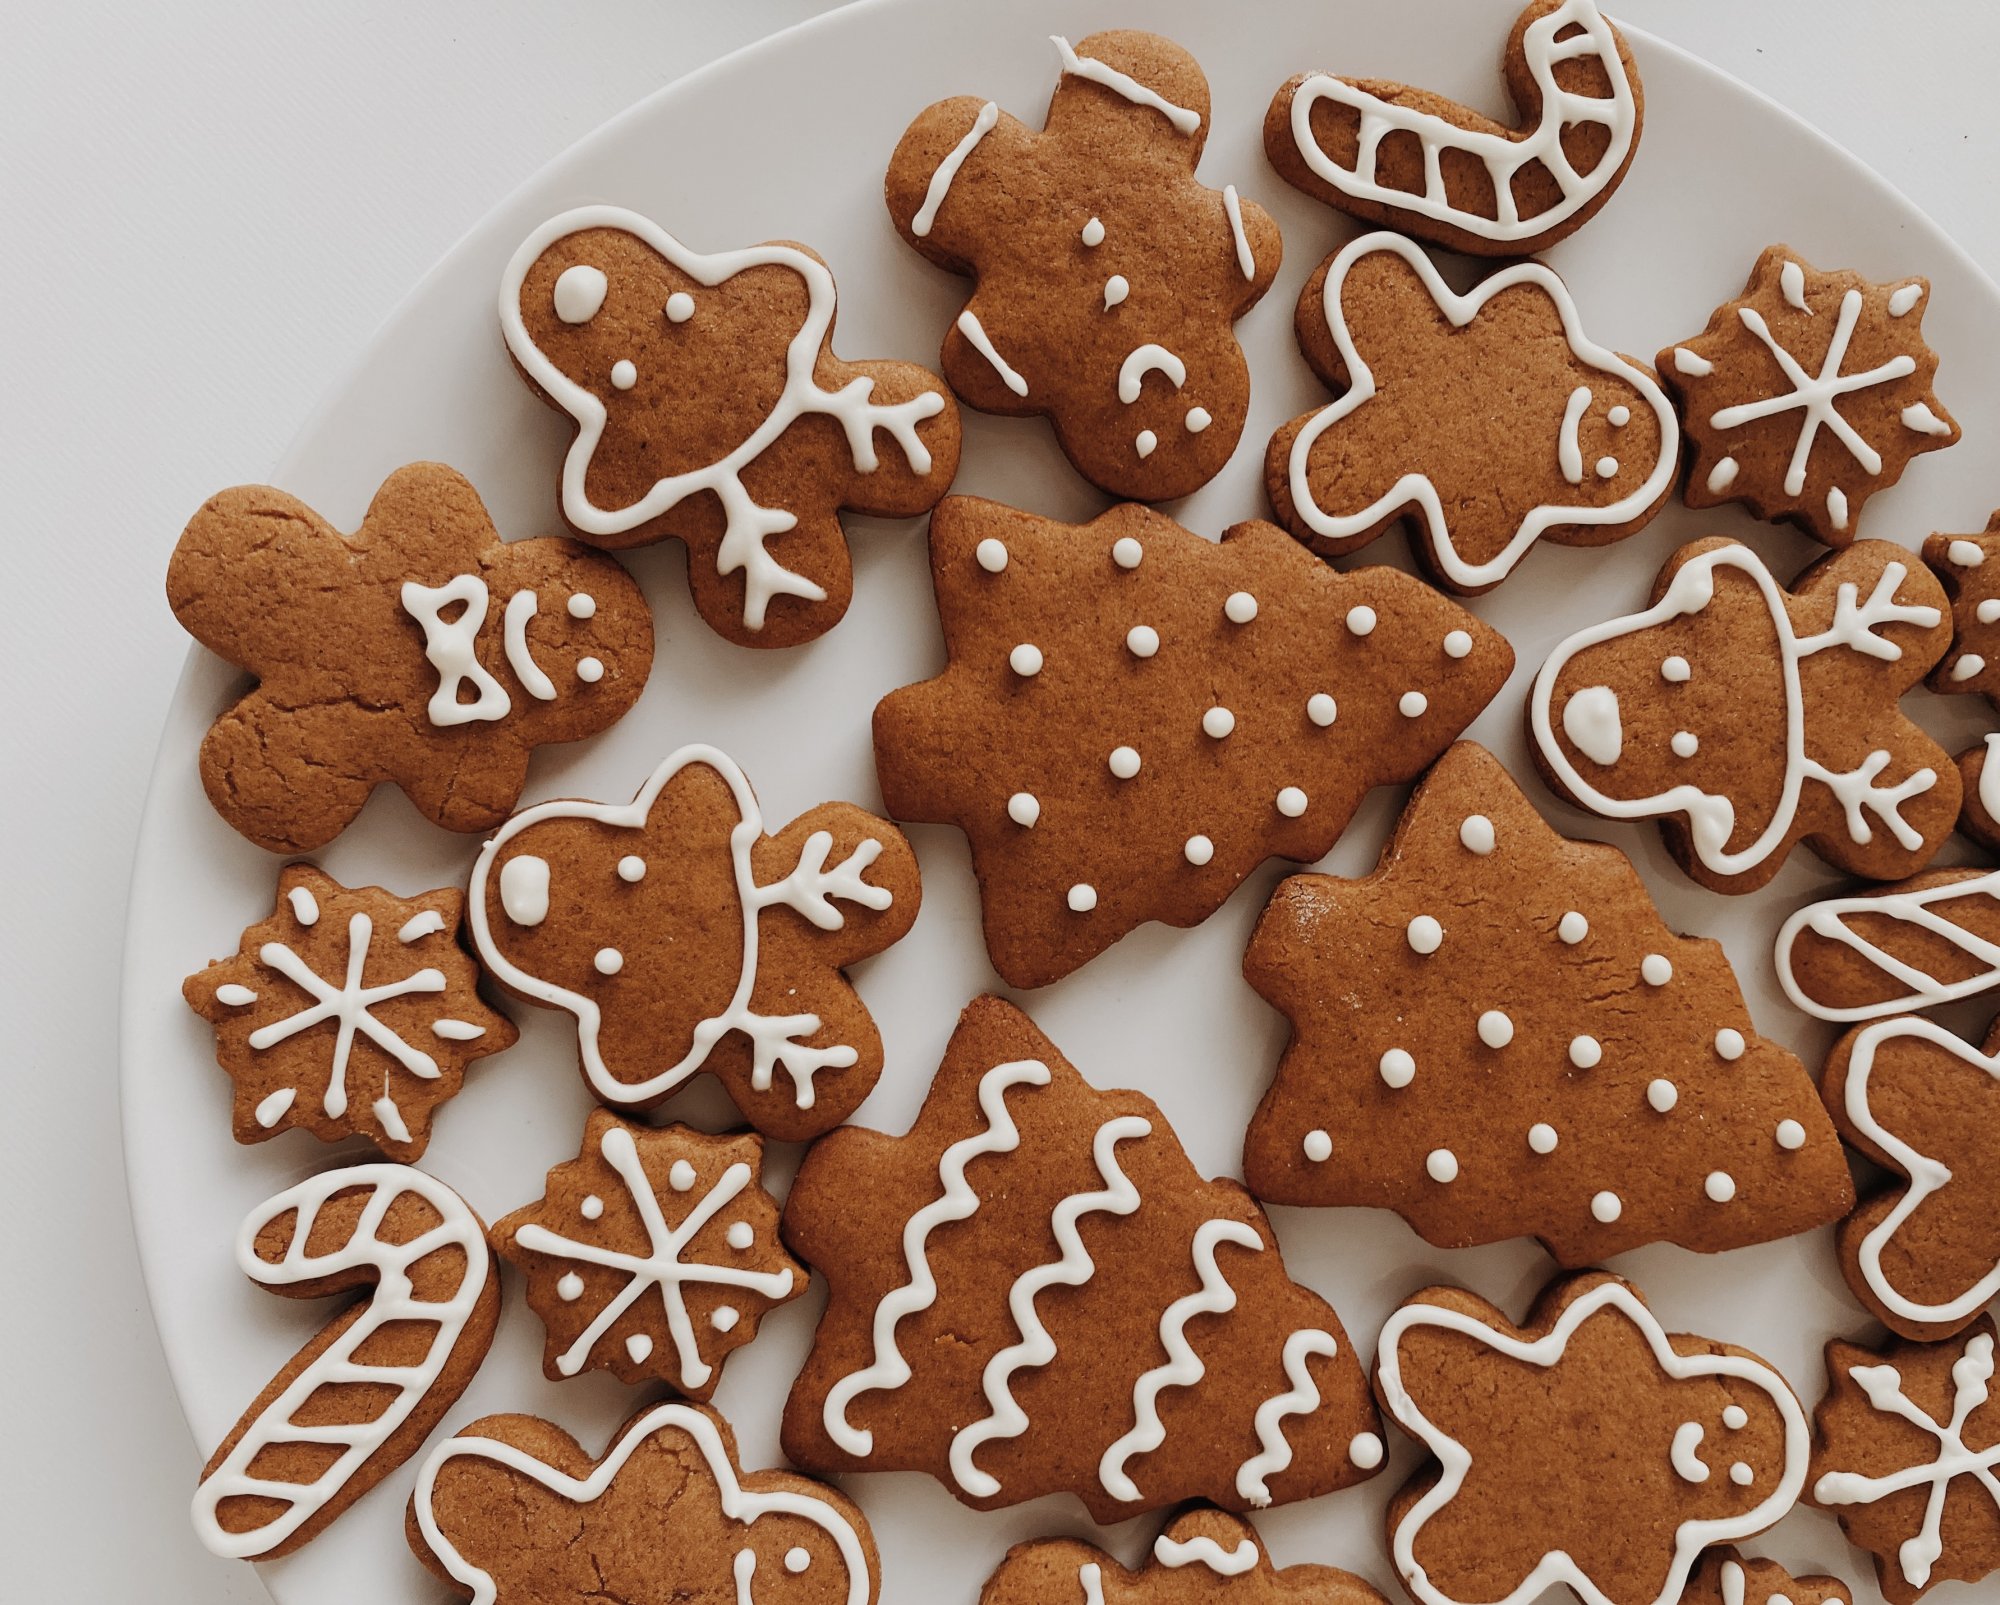 Φτιάχνουμε γιορτινά μπισκότα gingerbread και απολαμβάνουμε ποιοτικό χρόνο με τα παιδιά